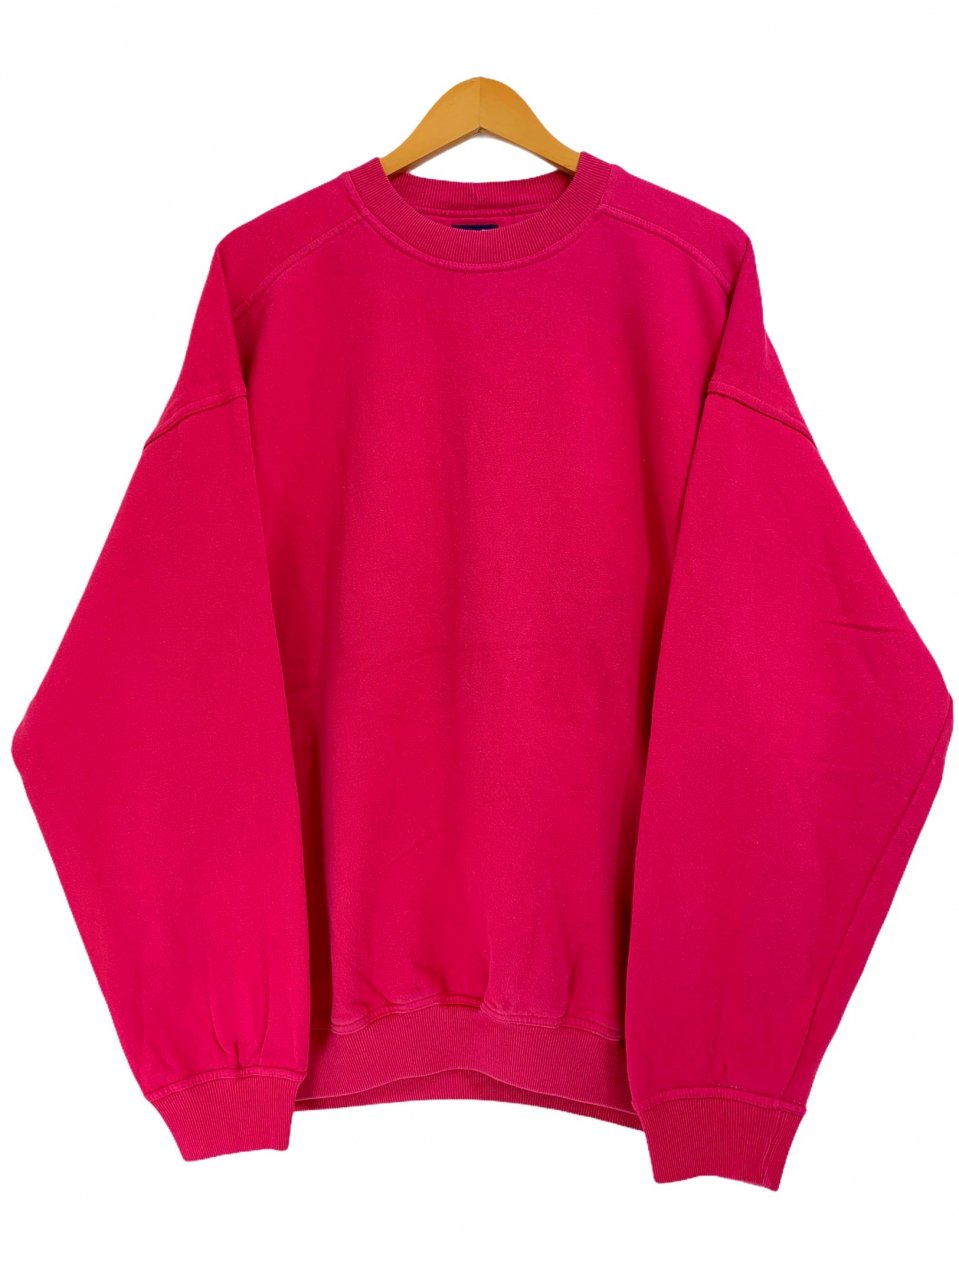 90s OLD GAP Plain Sweatshirt ピンク L オールドギャップ スウェット